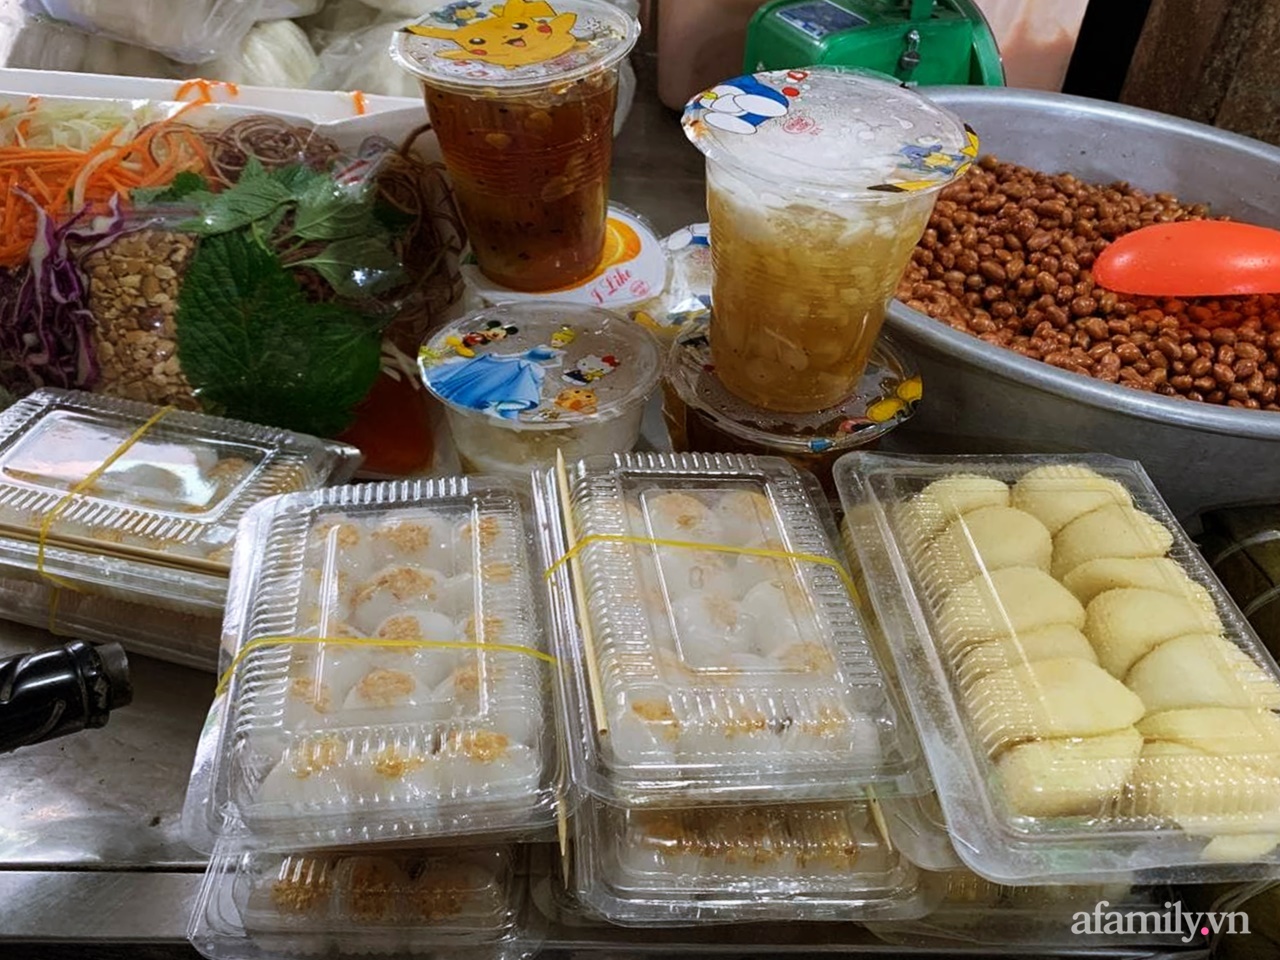 Tết Hàn thực: Ngay từ sớm bà nội trợ ở Hà Nội đã nhộn nhịp đi chợ mua bánh trôi bánh chay, sắm đồ cúng lễ - Ảnh 11.